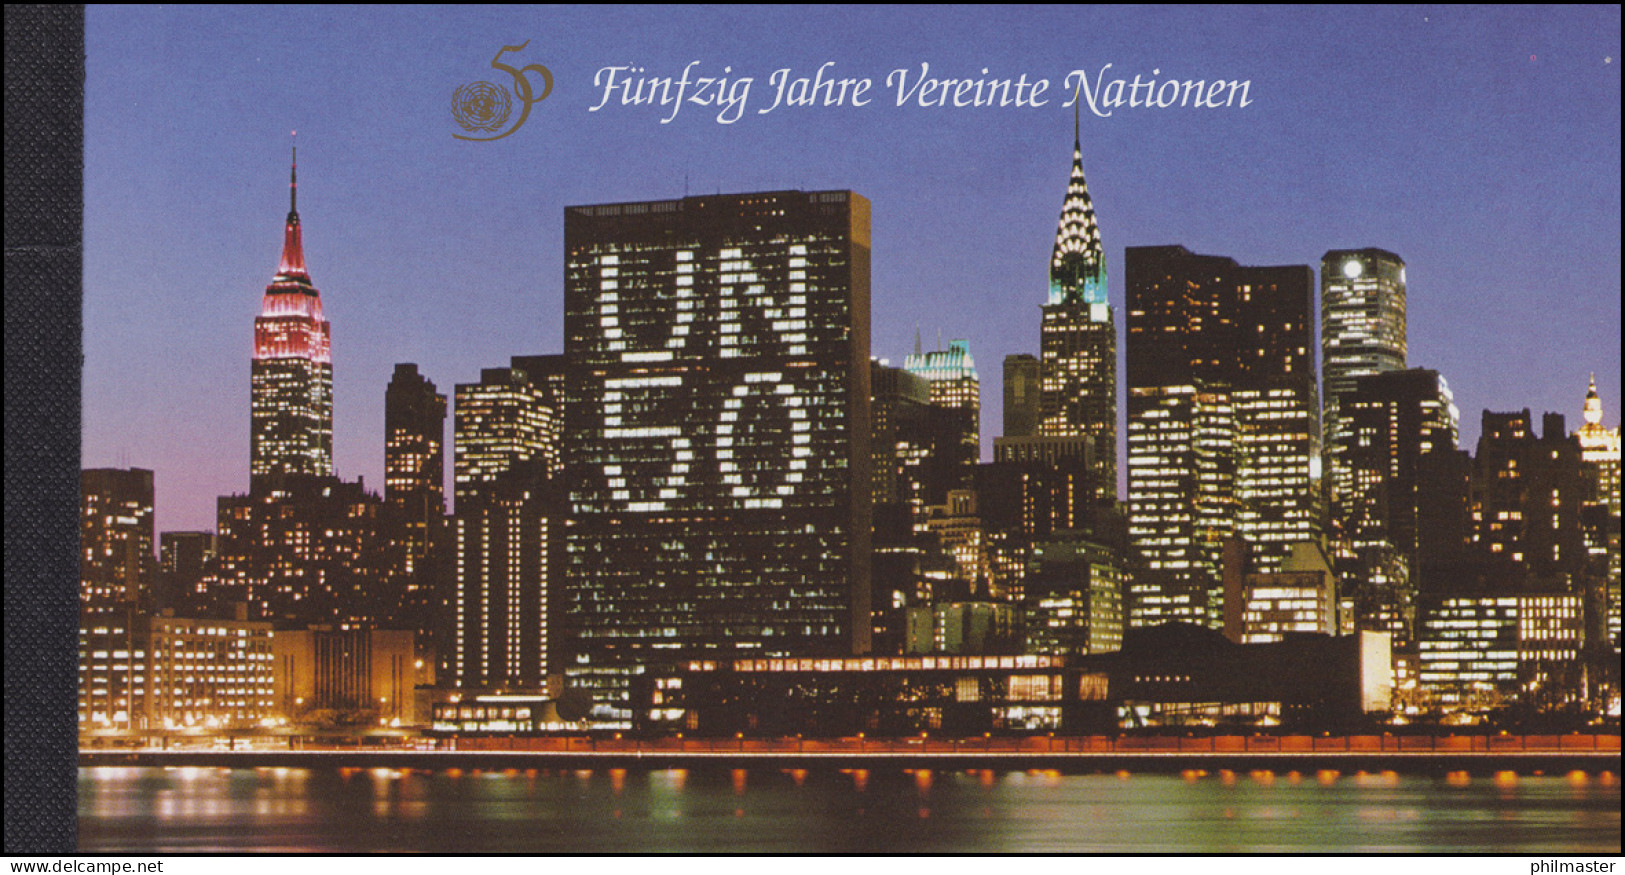 UNO Wien: Markenheftchen 1 Fünfzig Jahre Vereinte Nationen 1995, ** - Markenheftchen